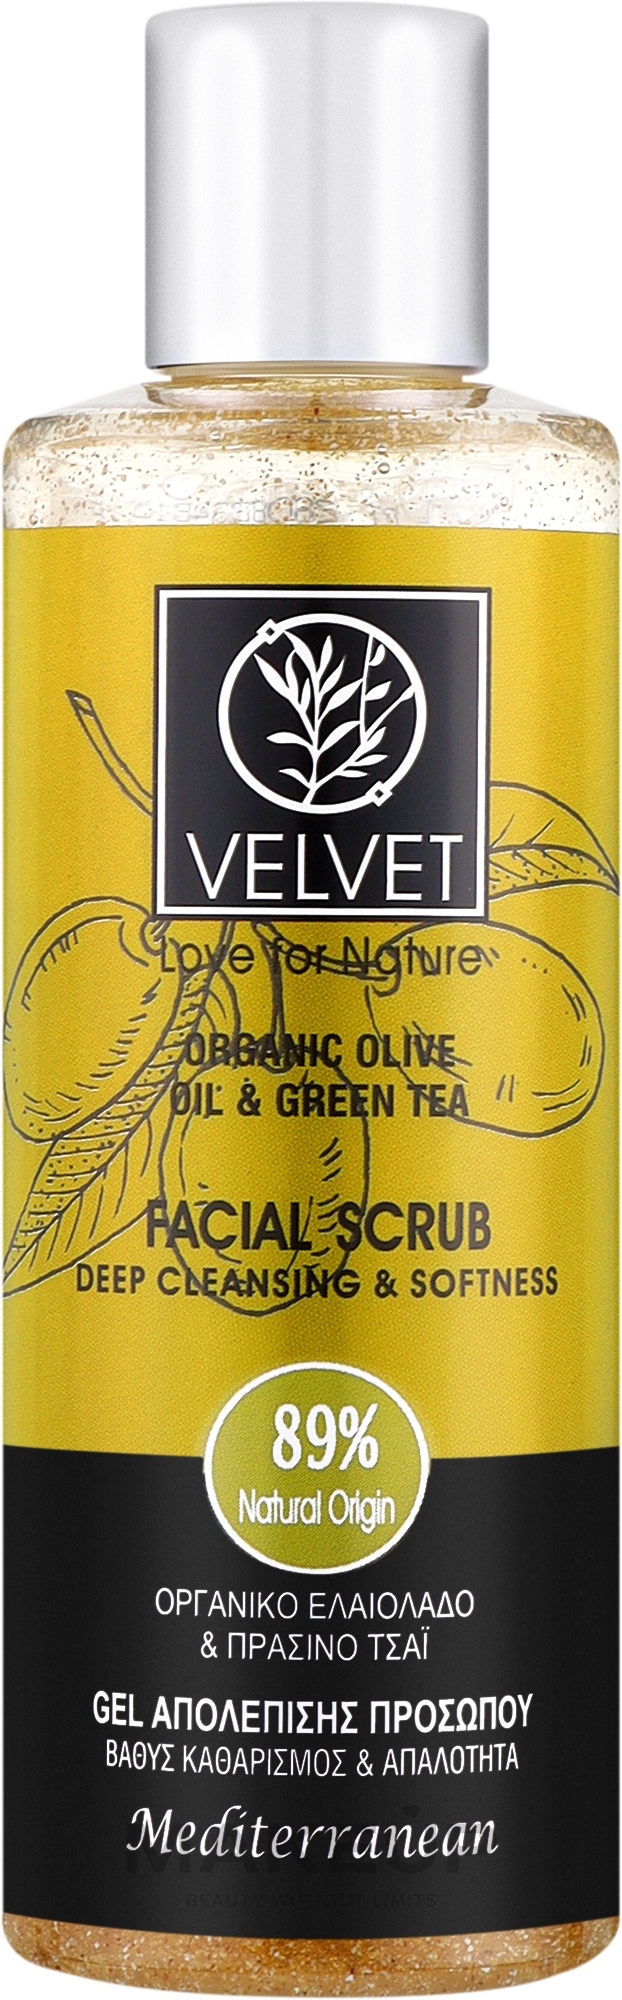 Скраб для лица - Velvet Love for Nature Organic Olive & Green Tea Face Scrub — фото 200ml